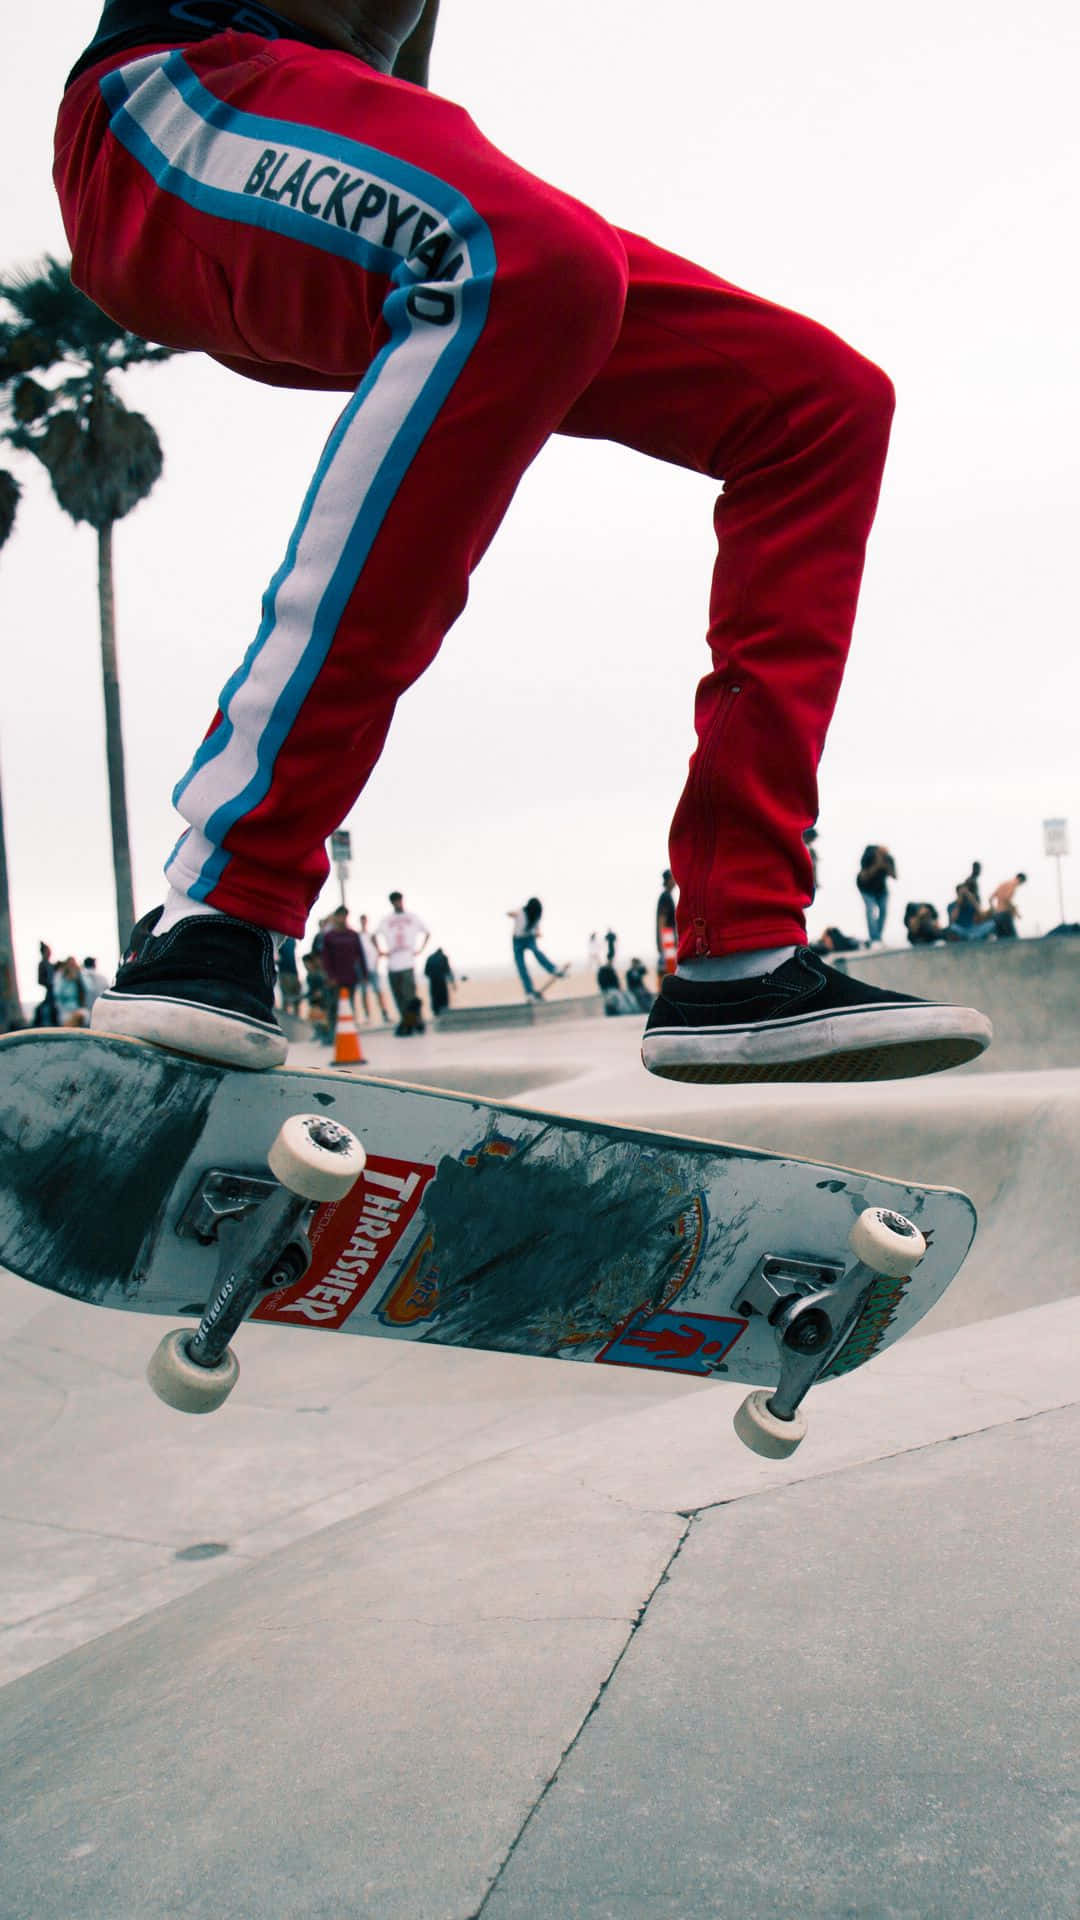 Eineperson Führt Einen Trick Auf Einem Skateboard Aus. Wallpaper